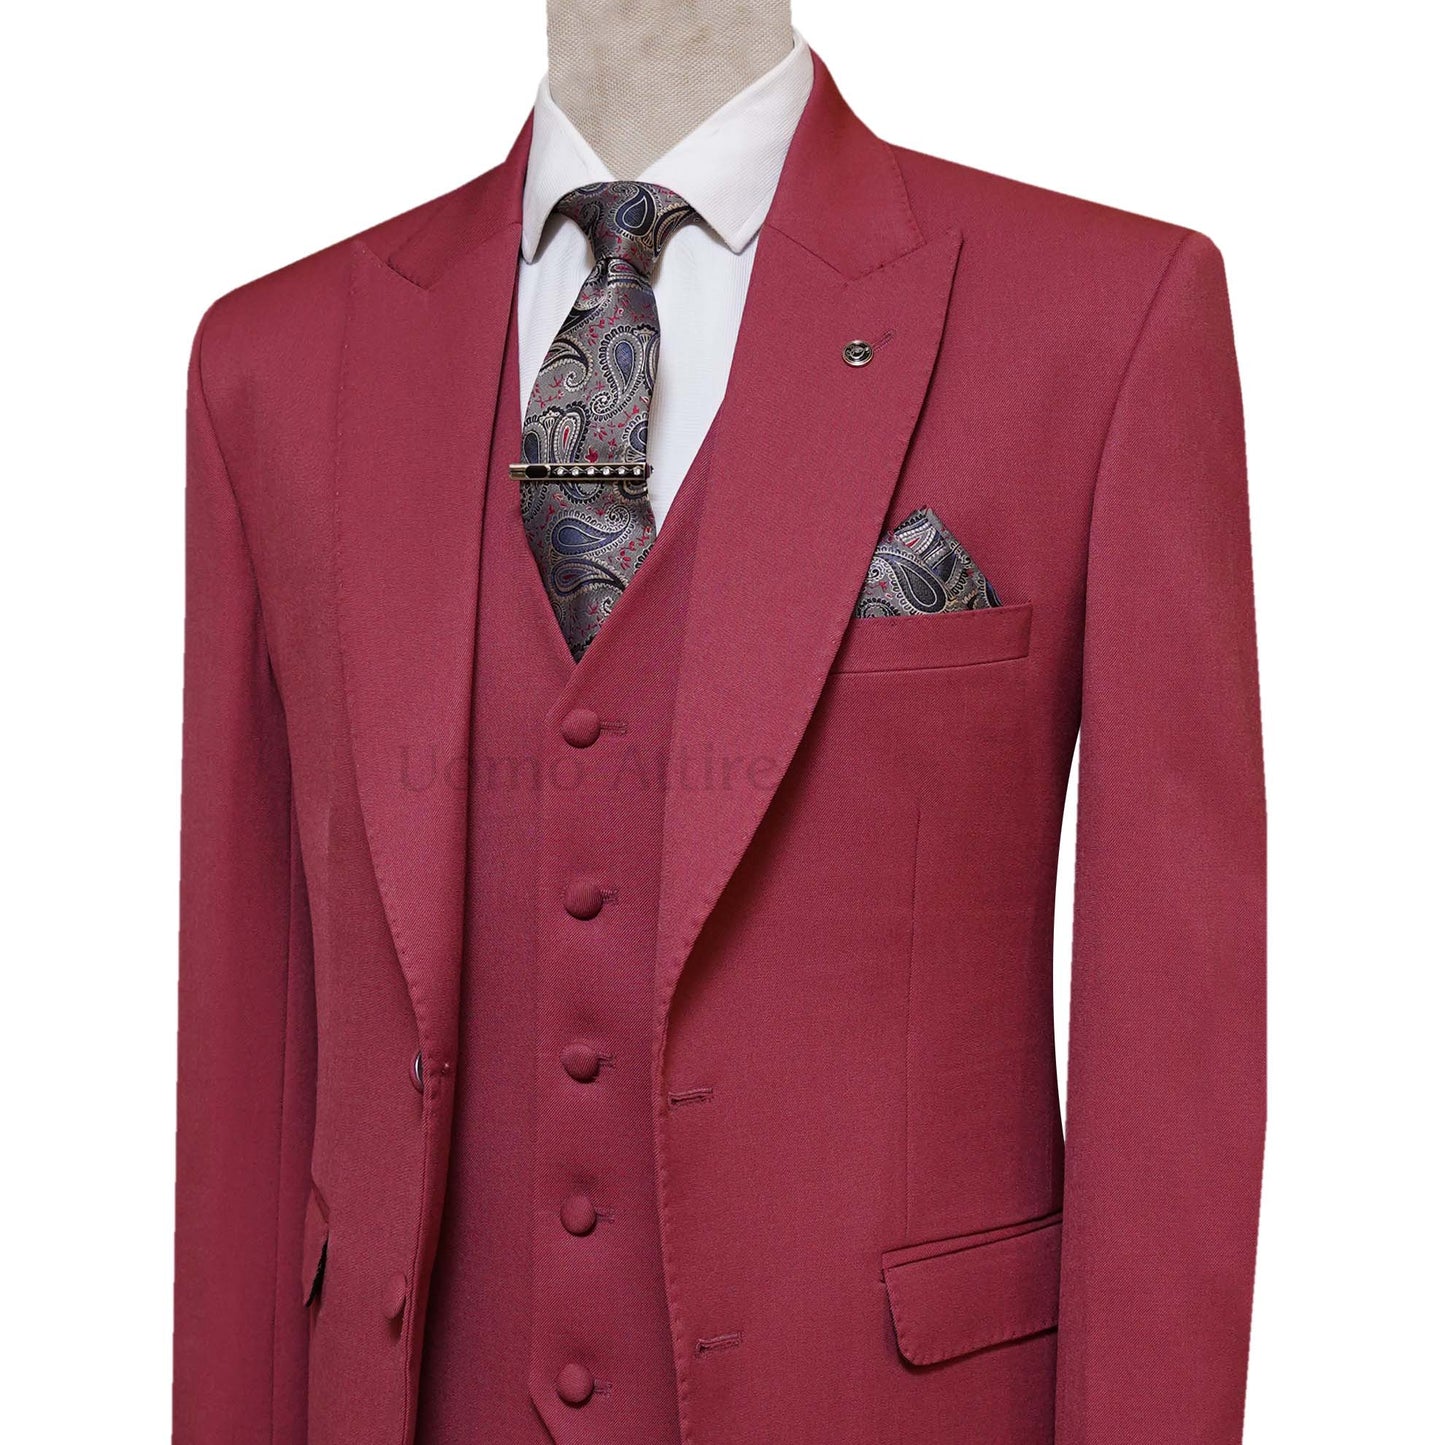 
                  
                    Bespoke Wine Red Men's Wedding Suit For Groom
                  
                